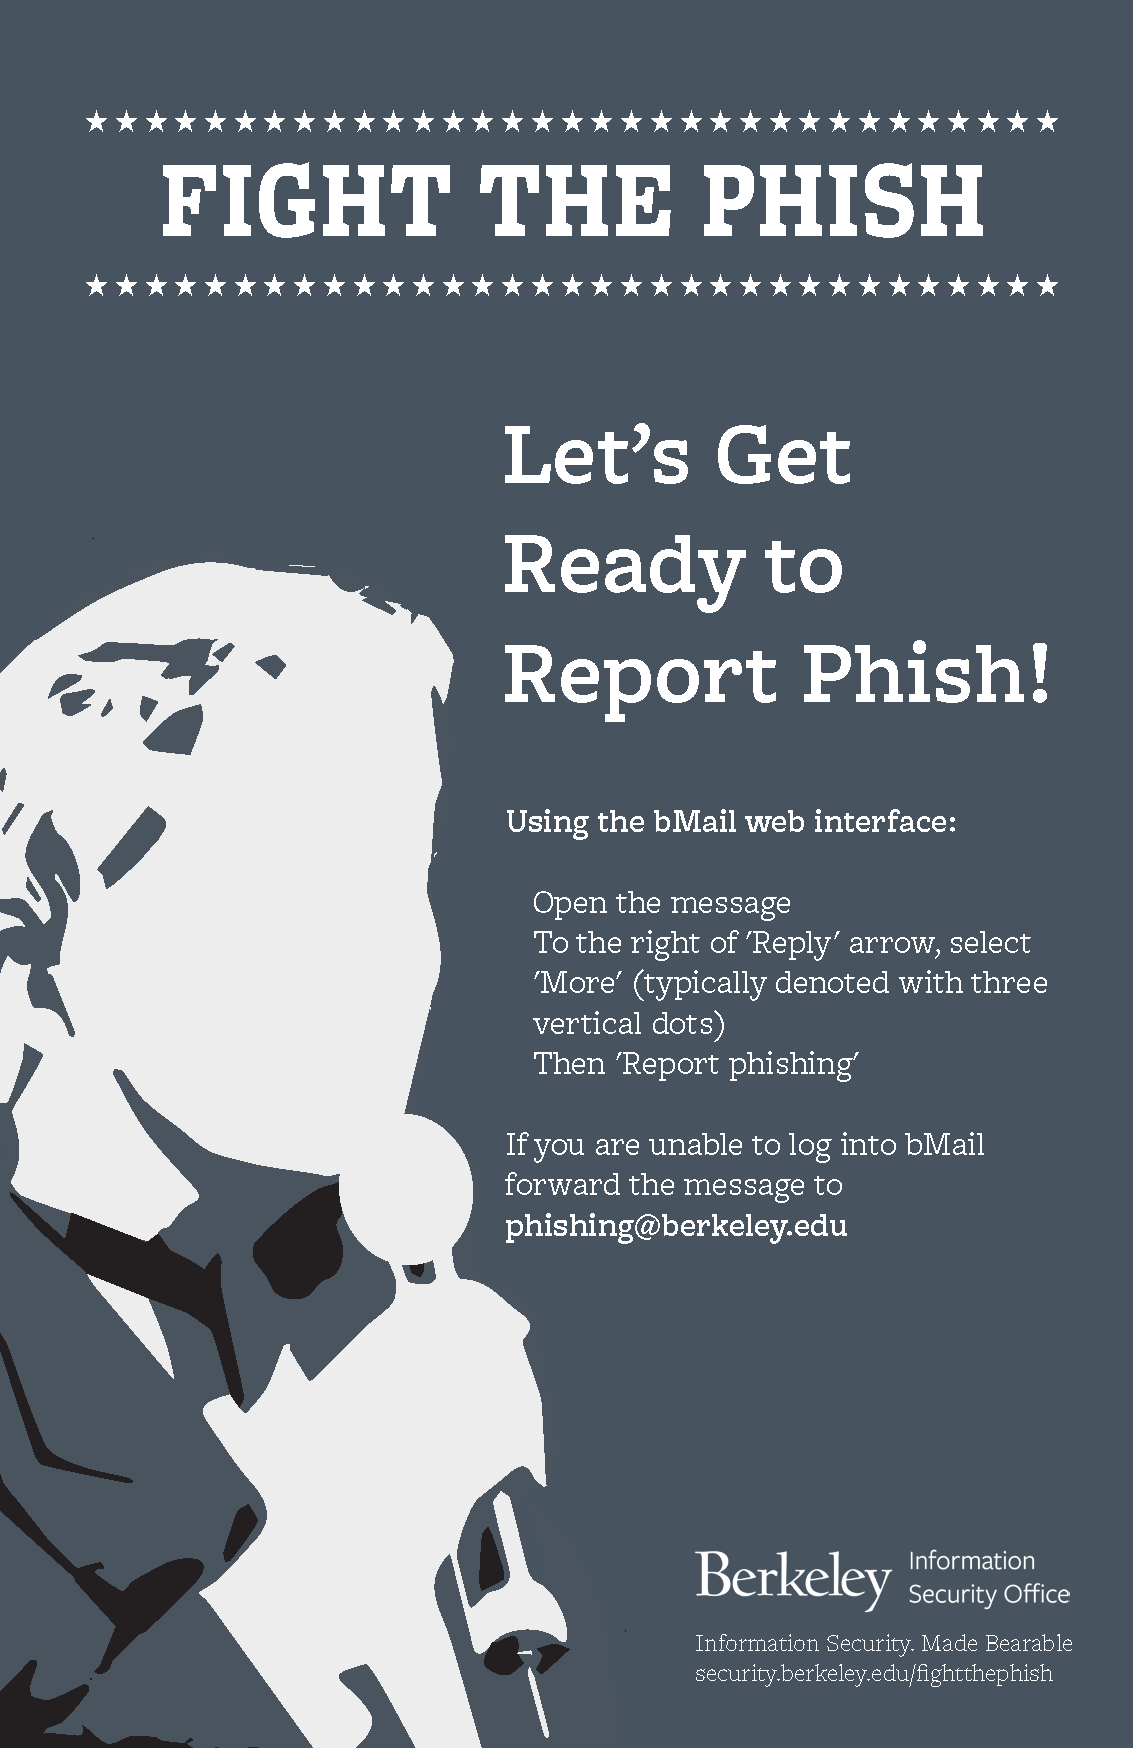 Report phish